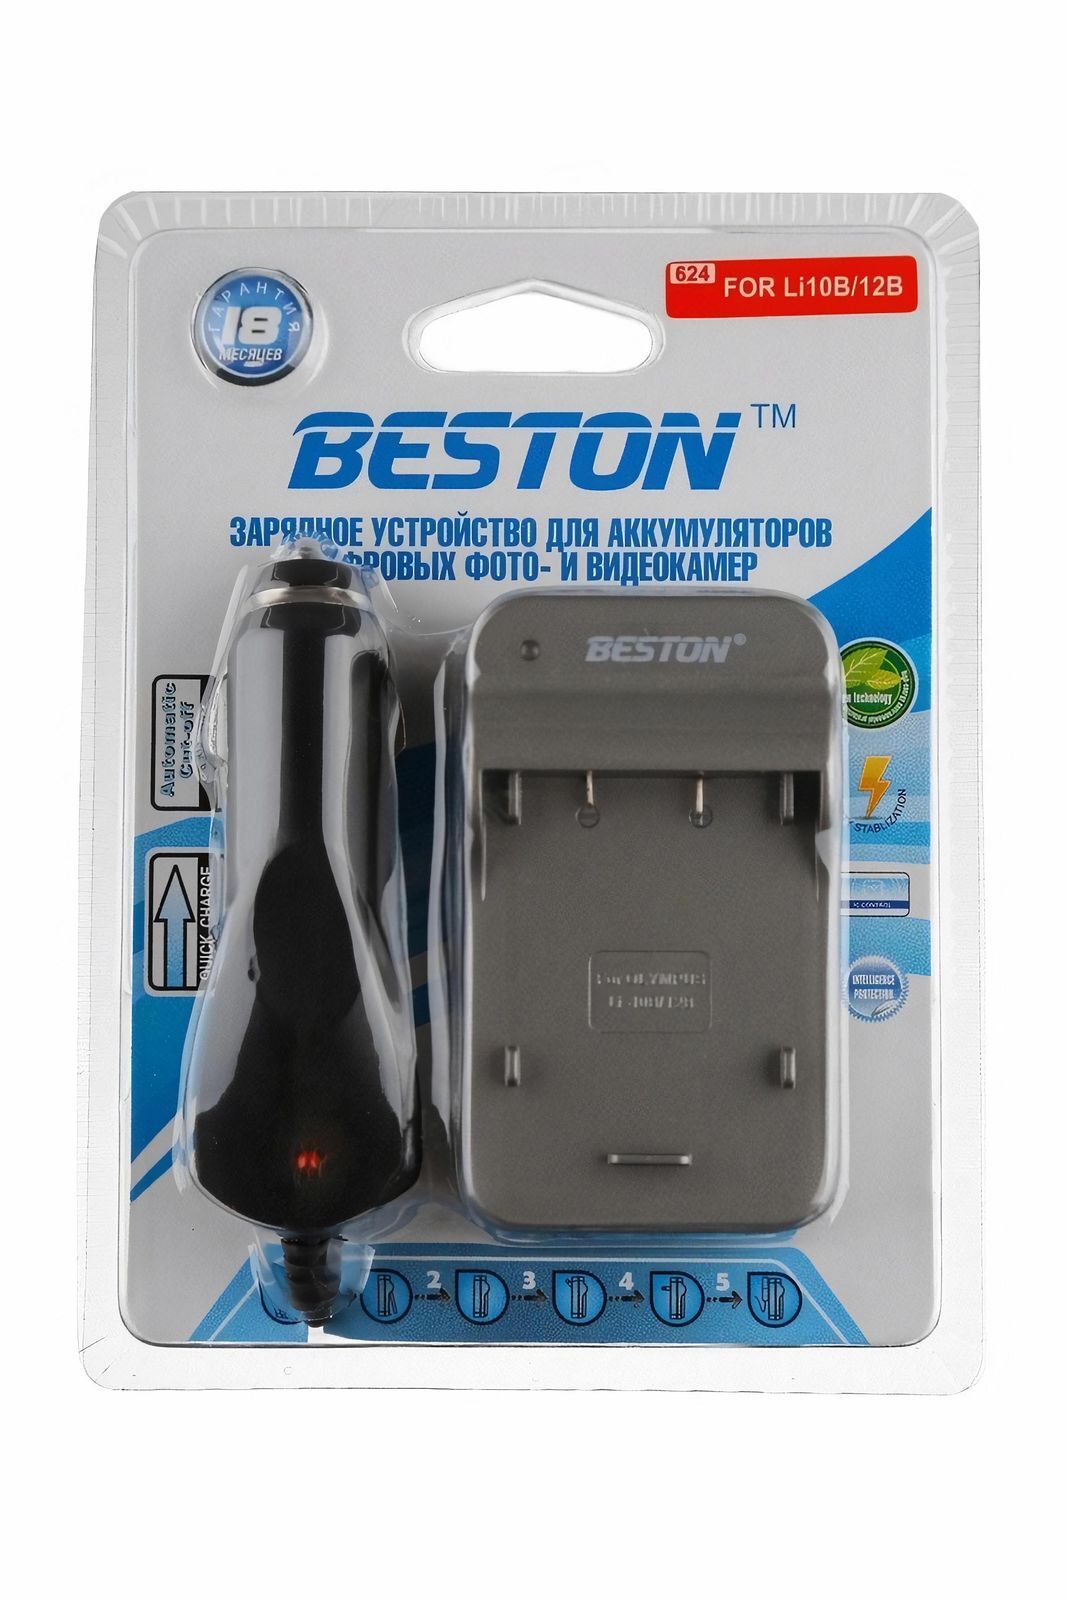 Зарядное устройство Beston BST-624D для Olympus Li-10B/12B, 3286